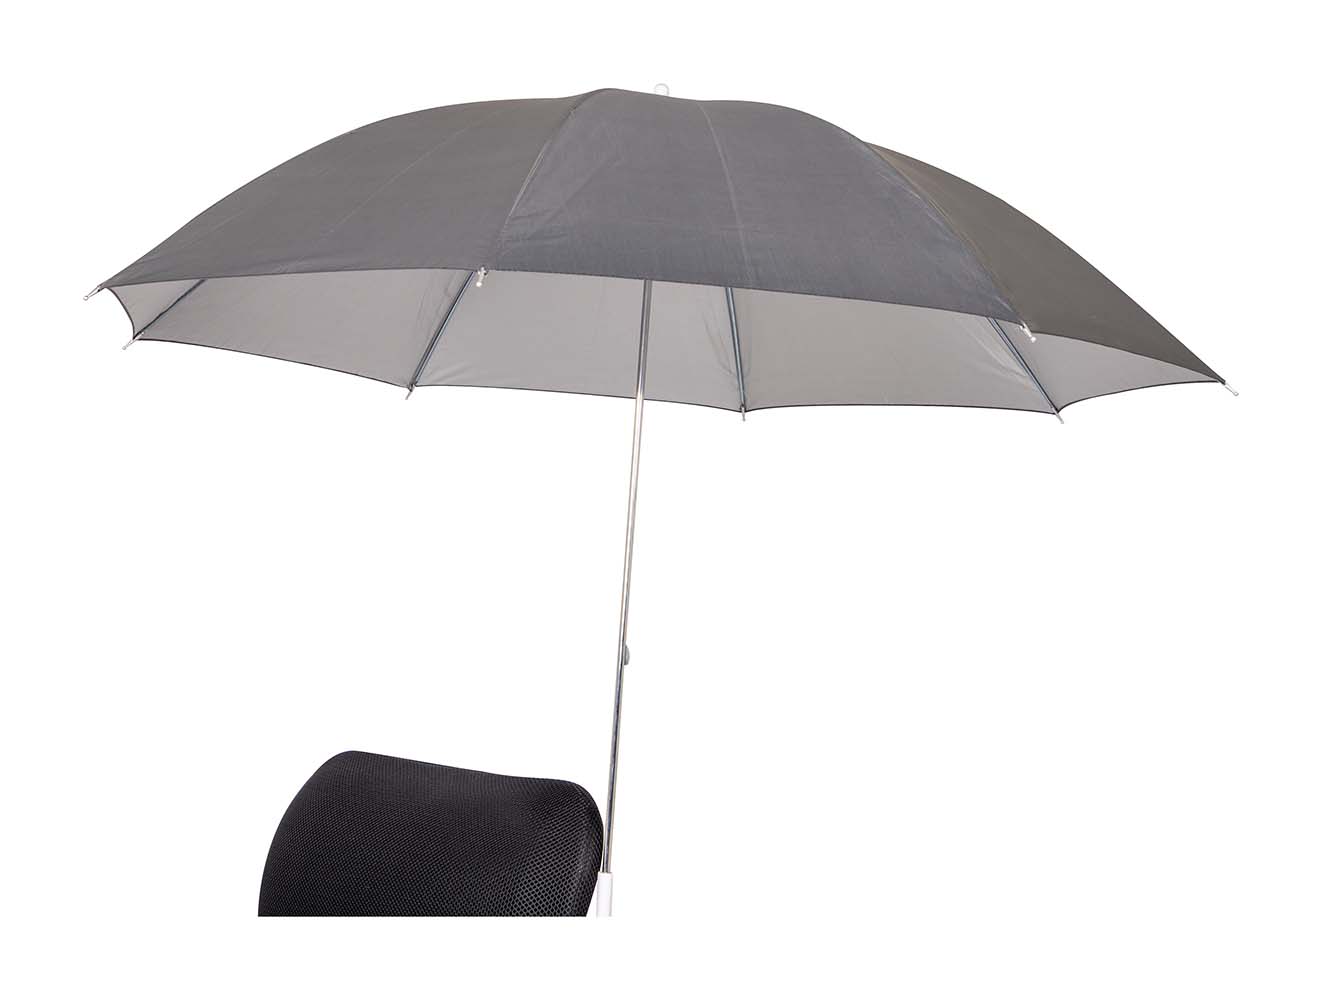 7267280 Een praktische stoelparasol. Deze stevige parasol heeft een gegalvaniseerd stalen frame, een verchroomde steel en luxe 170T polyester stof. Door middel van een klem is de parasol snel en eenvoudig te bevestigen op de gewenste locatie. Maximale diameter voor bevestiging is 2,5 cm. Biedt bescherming tegen schadelijke zonnestraling.Een praktische stoelparasol die gemakkelijk is mee te nemen. Deze stevige parasol is voorzien van een gegalvaniseerd stalen frame, een verchroomde steel en luxe 170T polyester stof. Door middel van een klem is de parasol snel en eenvoudig te bevestigen op bijna elke stoel. De maximale dikte voor bevestiging is 2,5 cm. Bovendien voorzien van een zilvercoating voor extra UV wering.